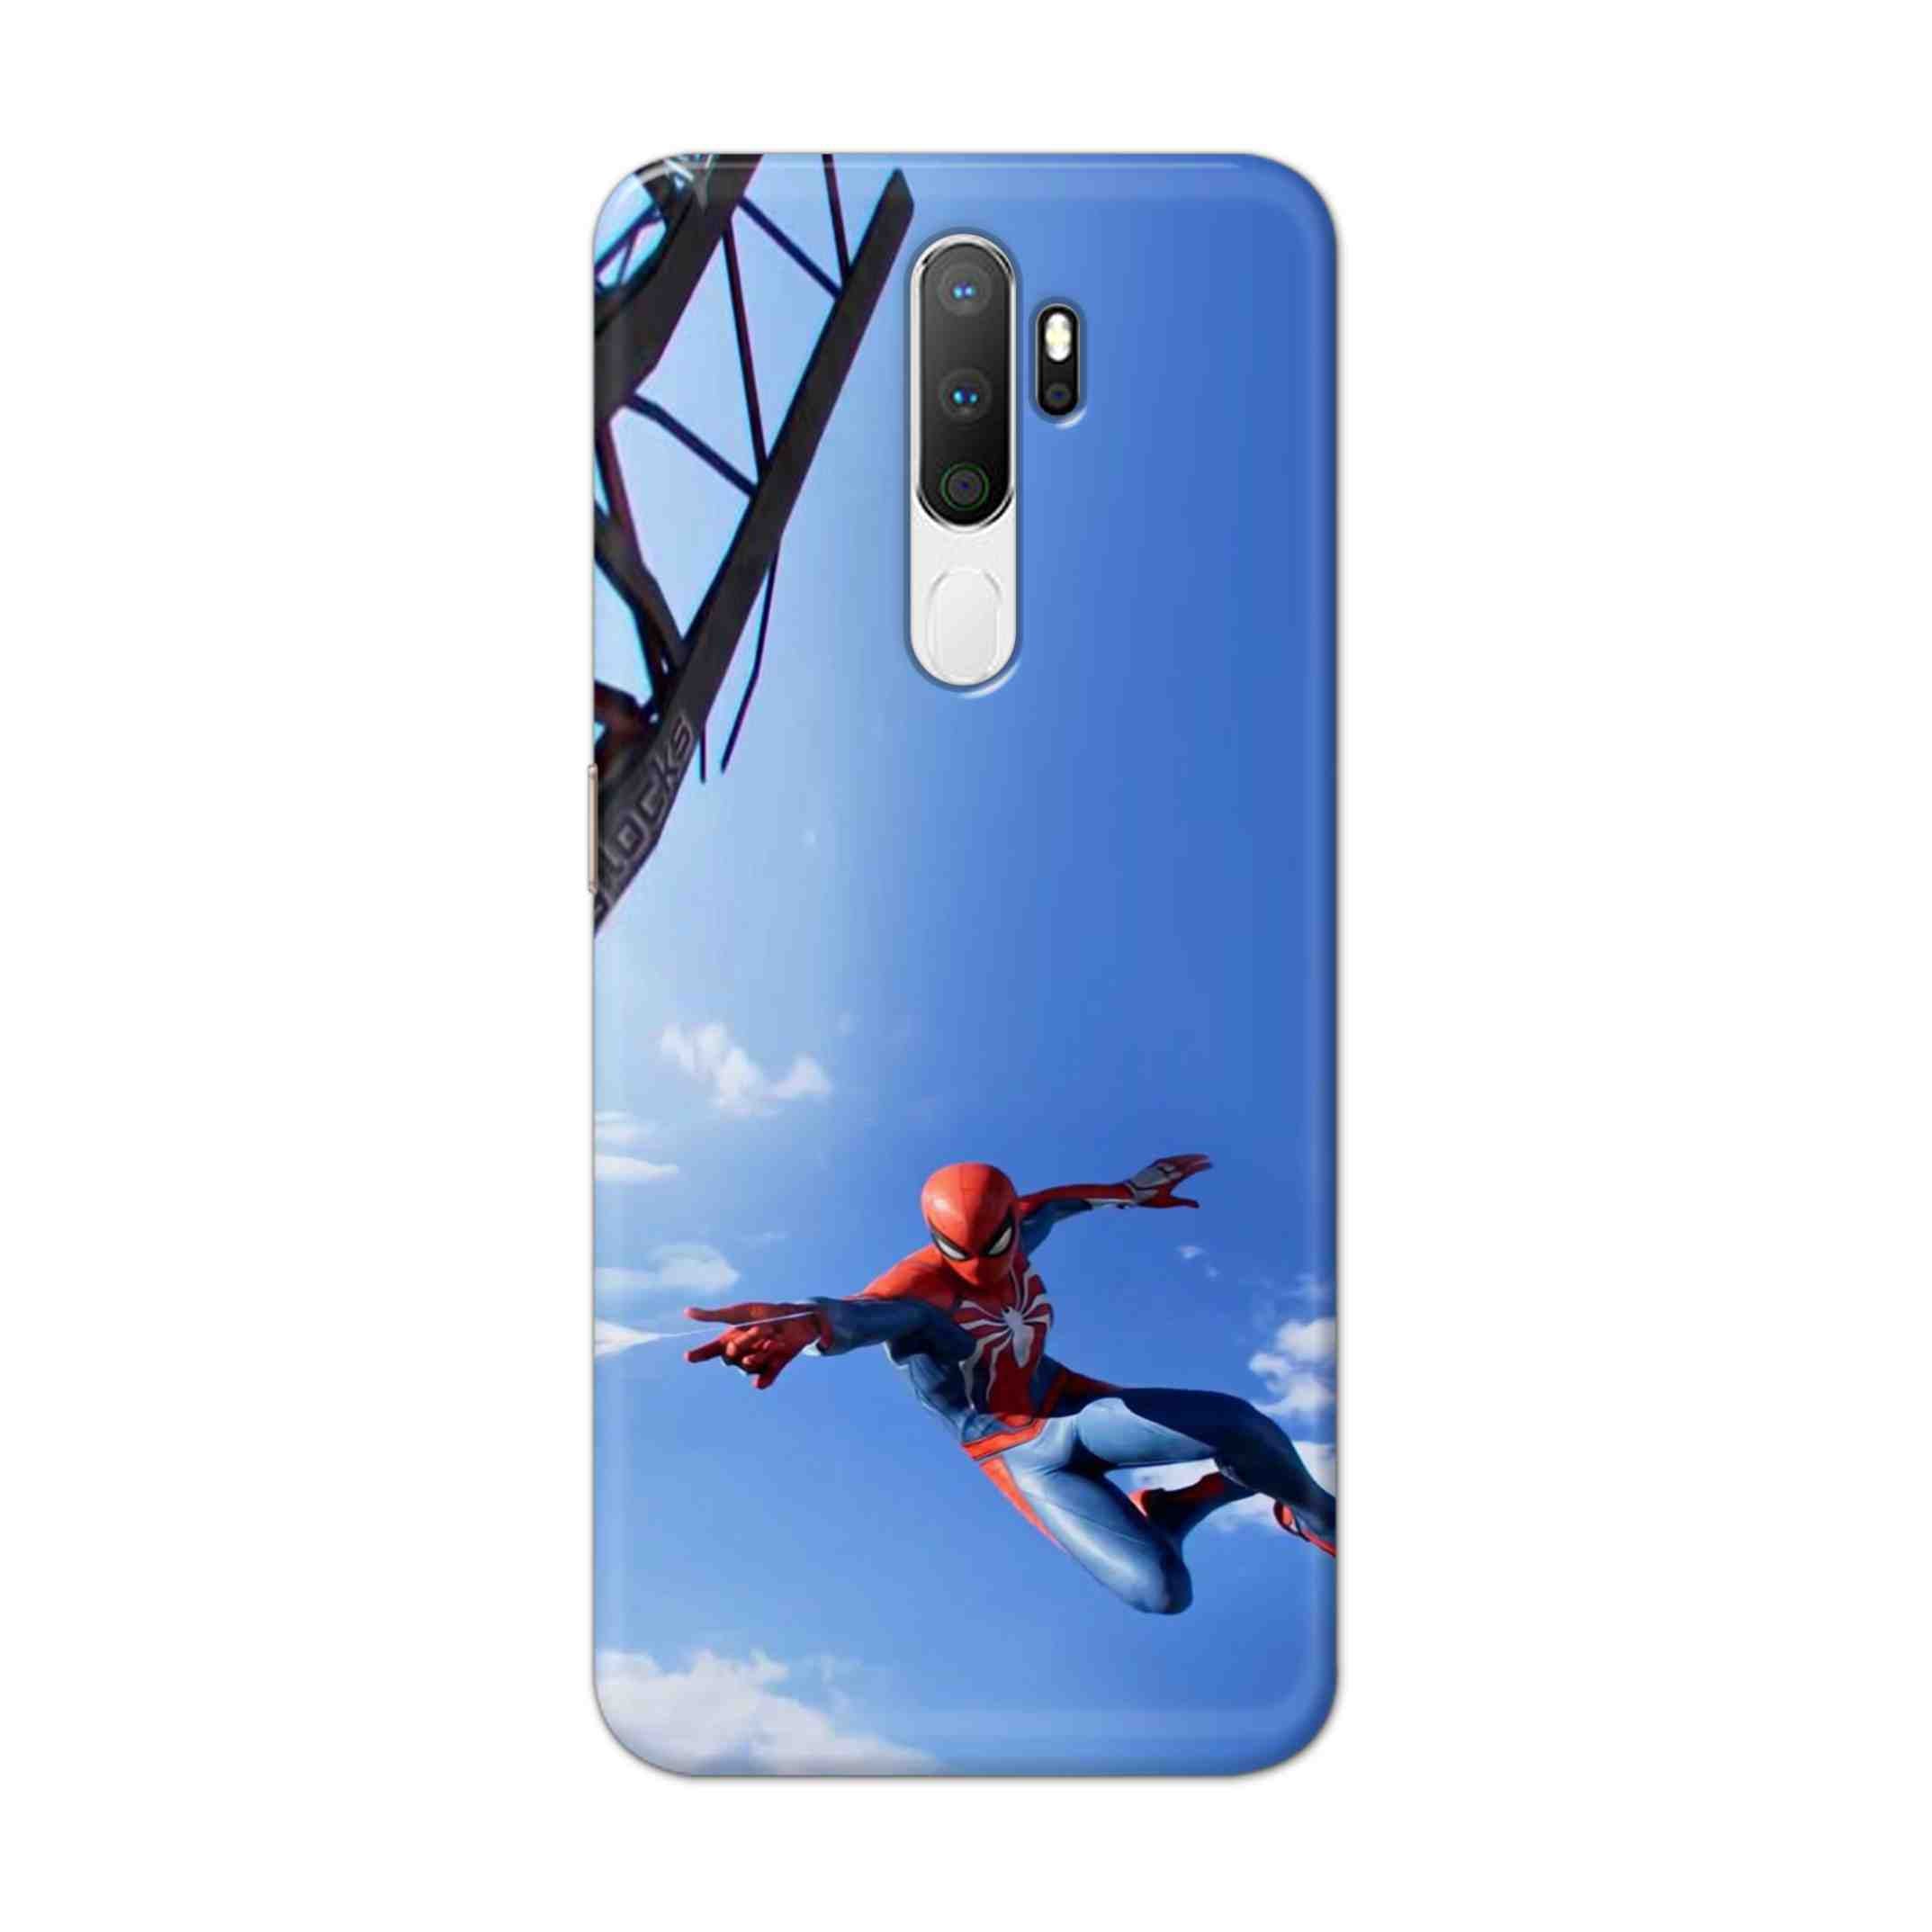 Buy Marvel Studio Spiderman Hard Back Mobile Phone Case Cover For Oppo A5 (2020) Online